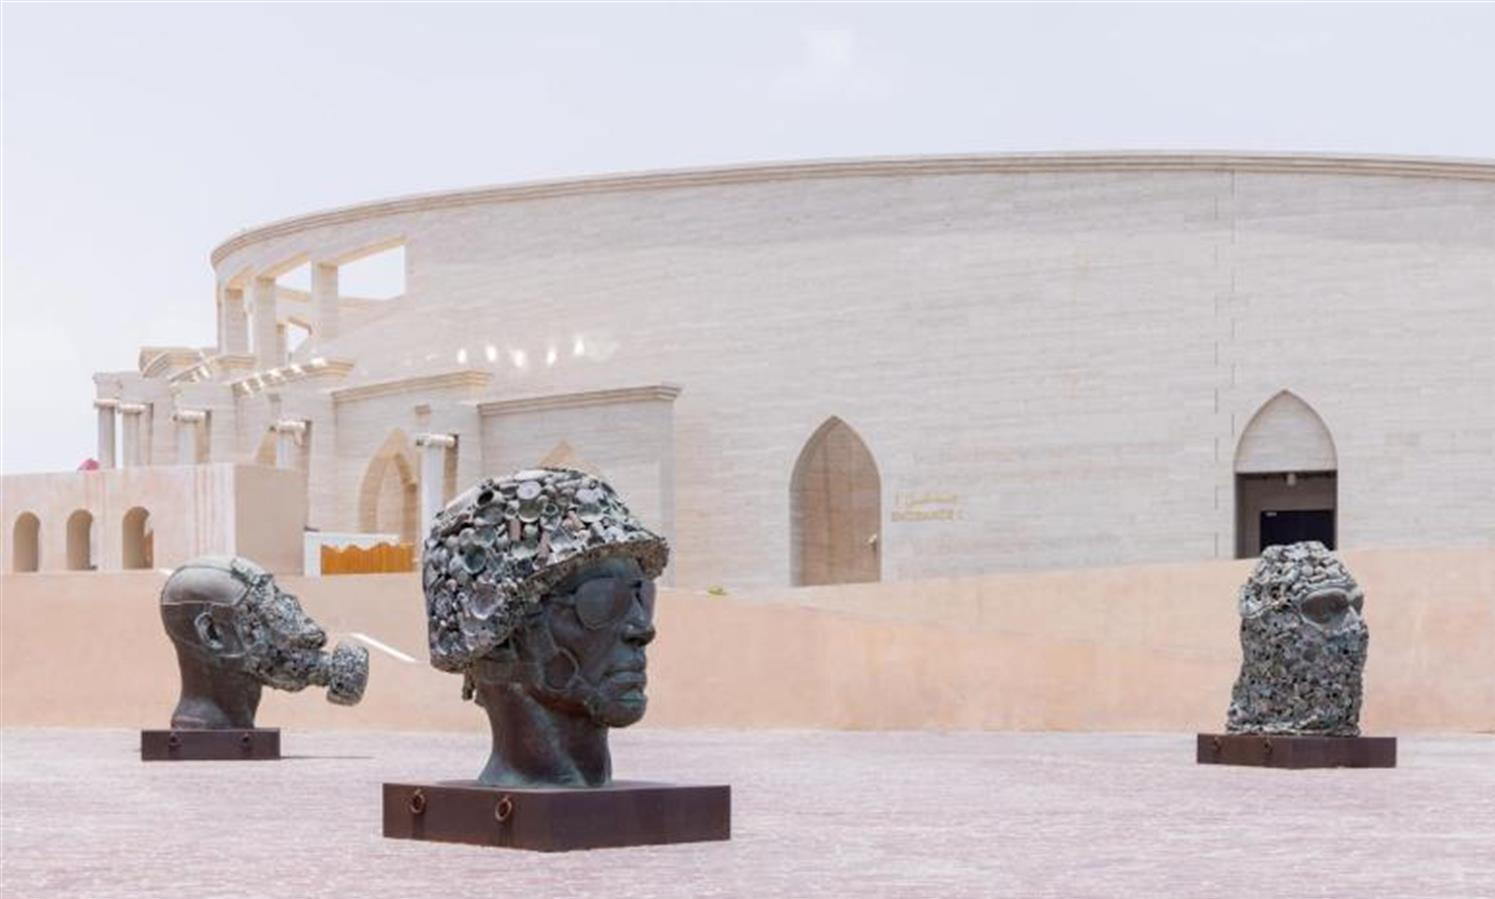 40 milžiniškų statulų pastatymas Katare / Pasaulio futbolo čempionate ir dviguba atrakcija